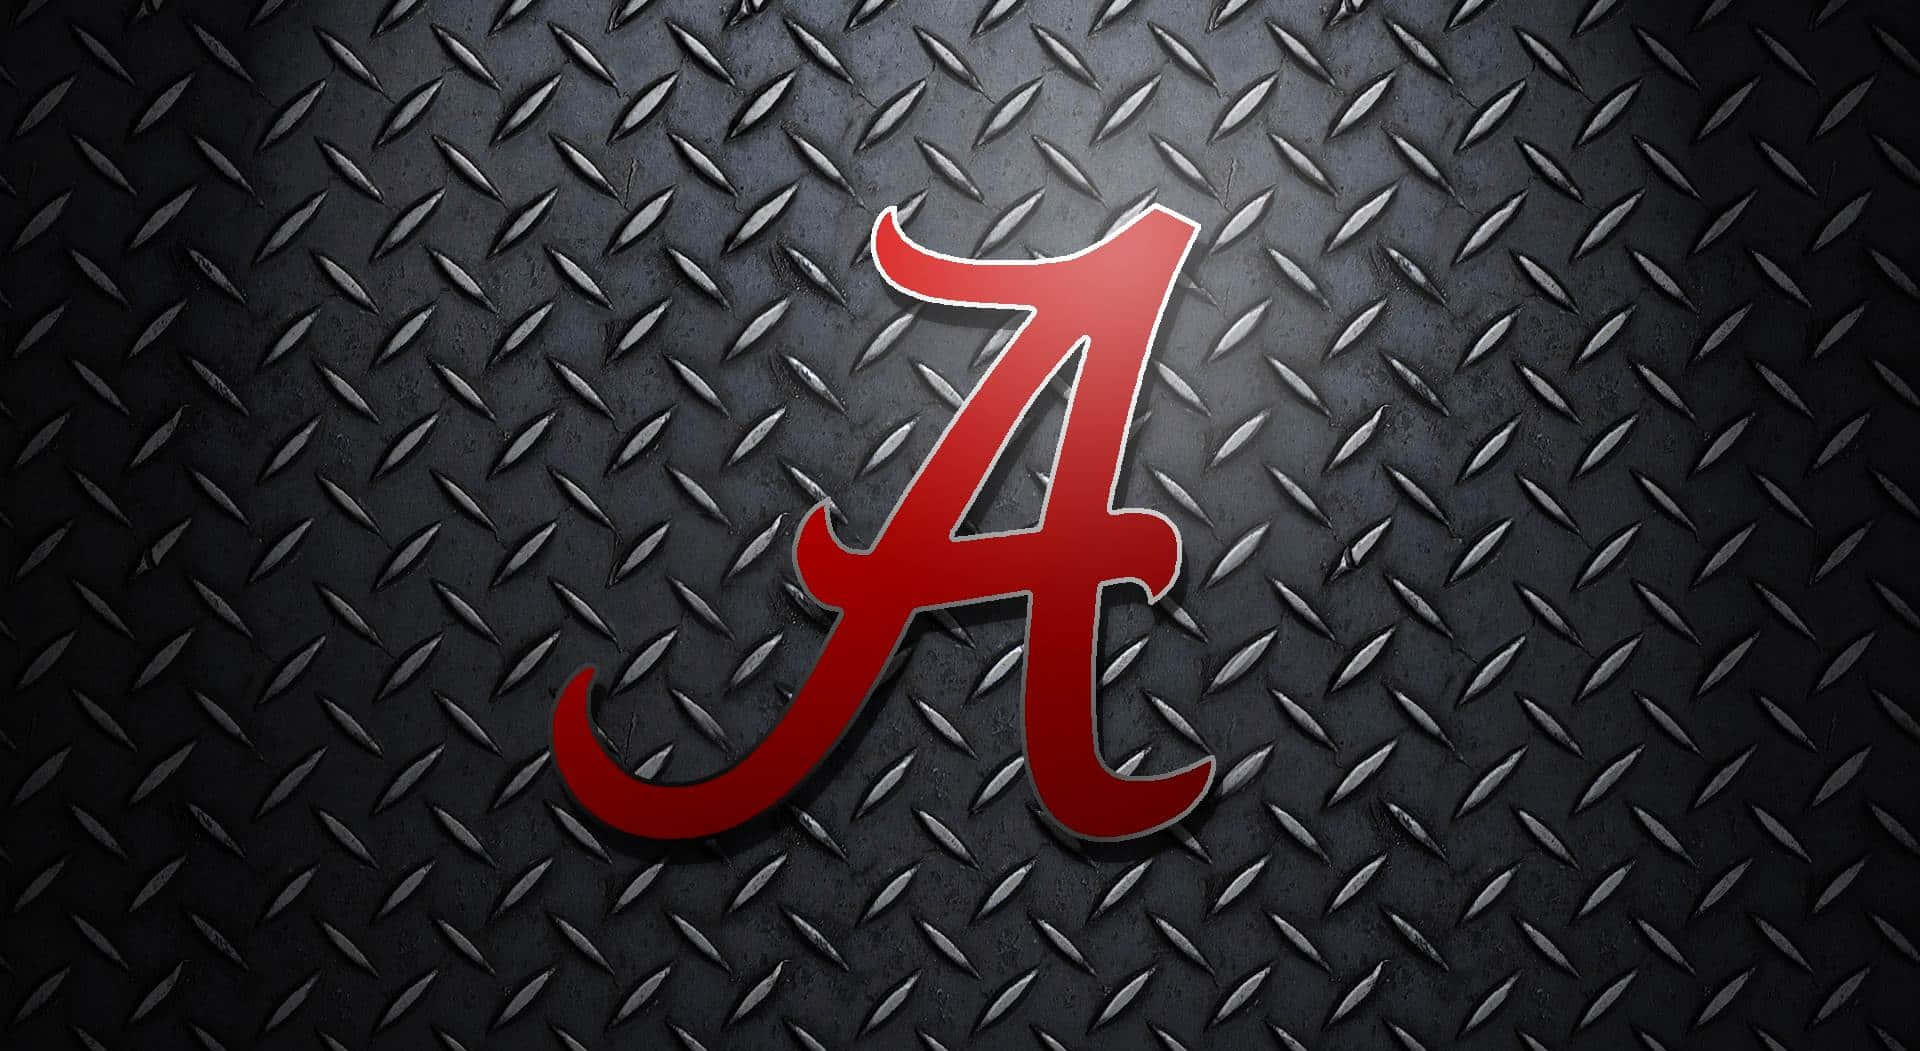 Alabama Football Team Symbol On Tread Plate Background